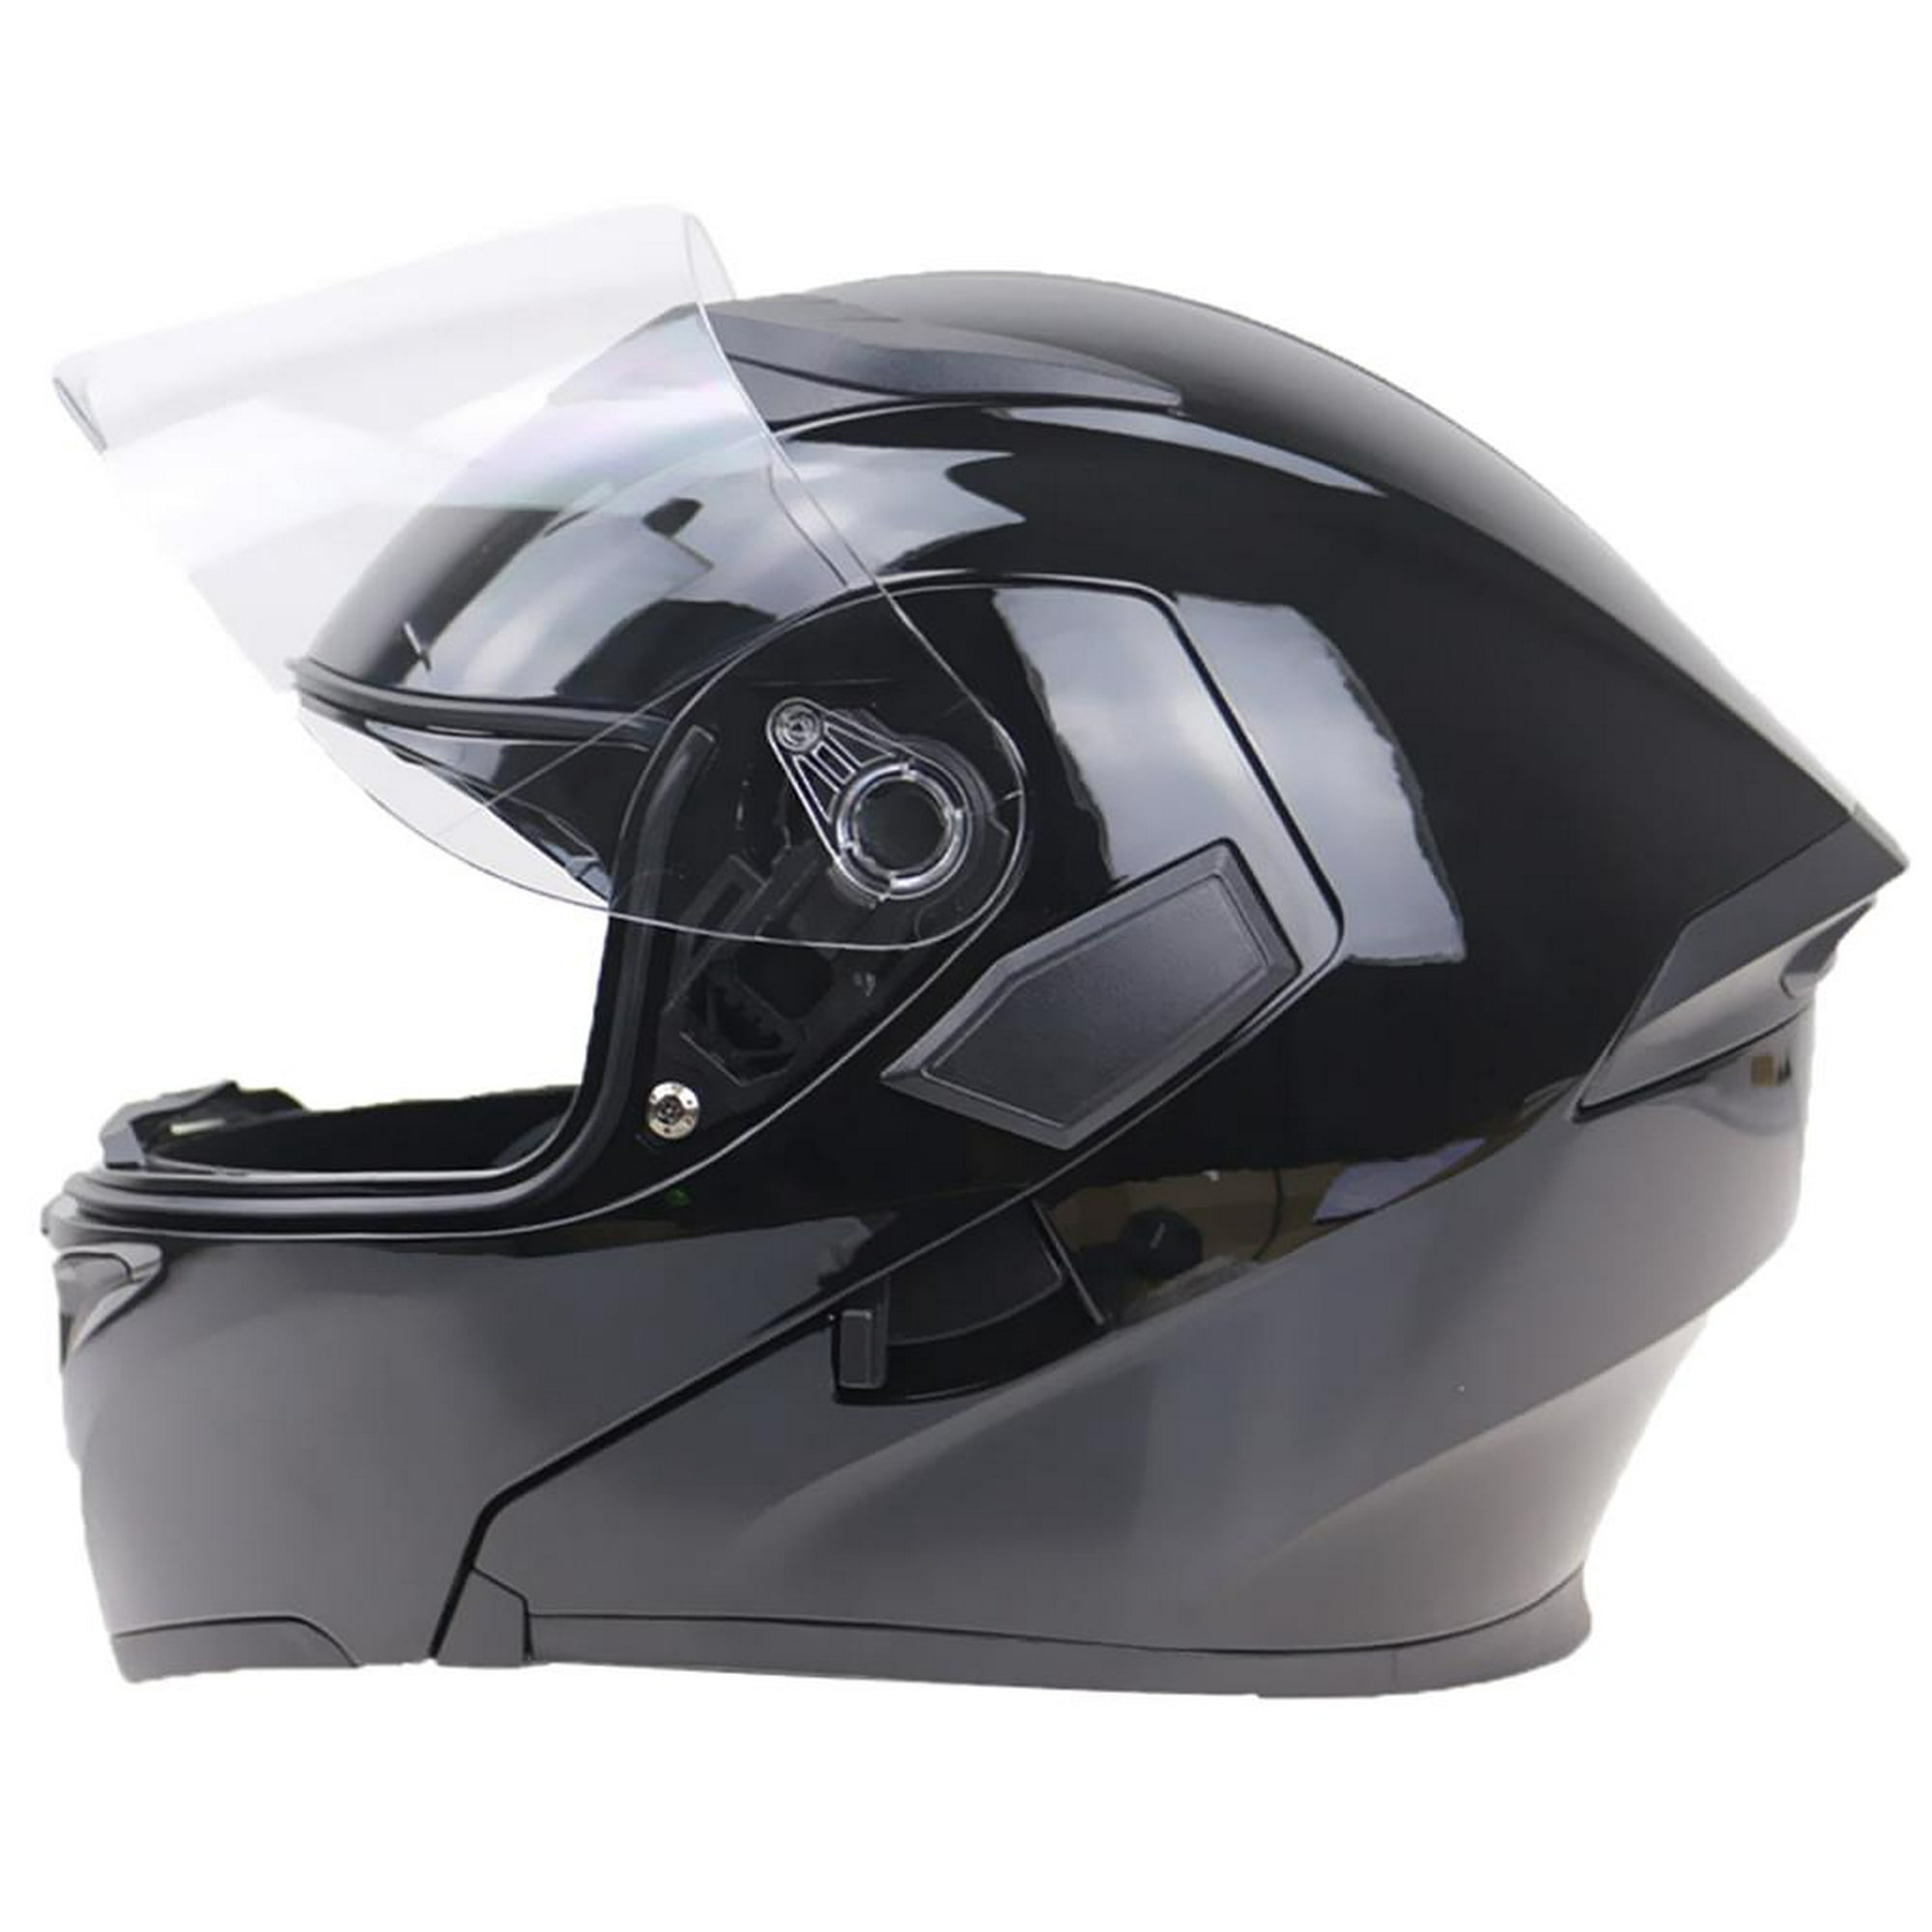 2x K01-3 rodilleras para motocicleta, de protección resistente golpes apto  para carreras de Motocros Soledad rodilleras de moto